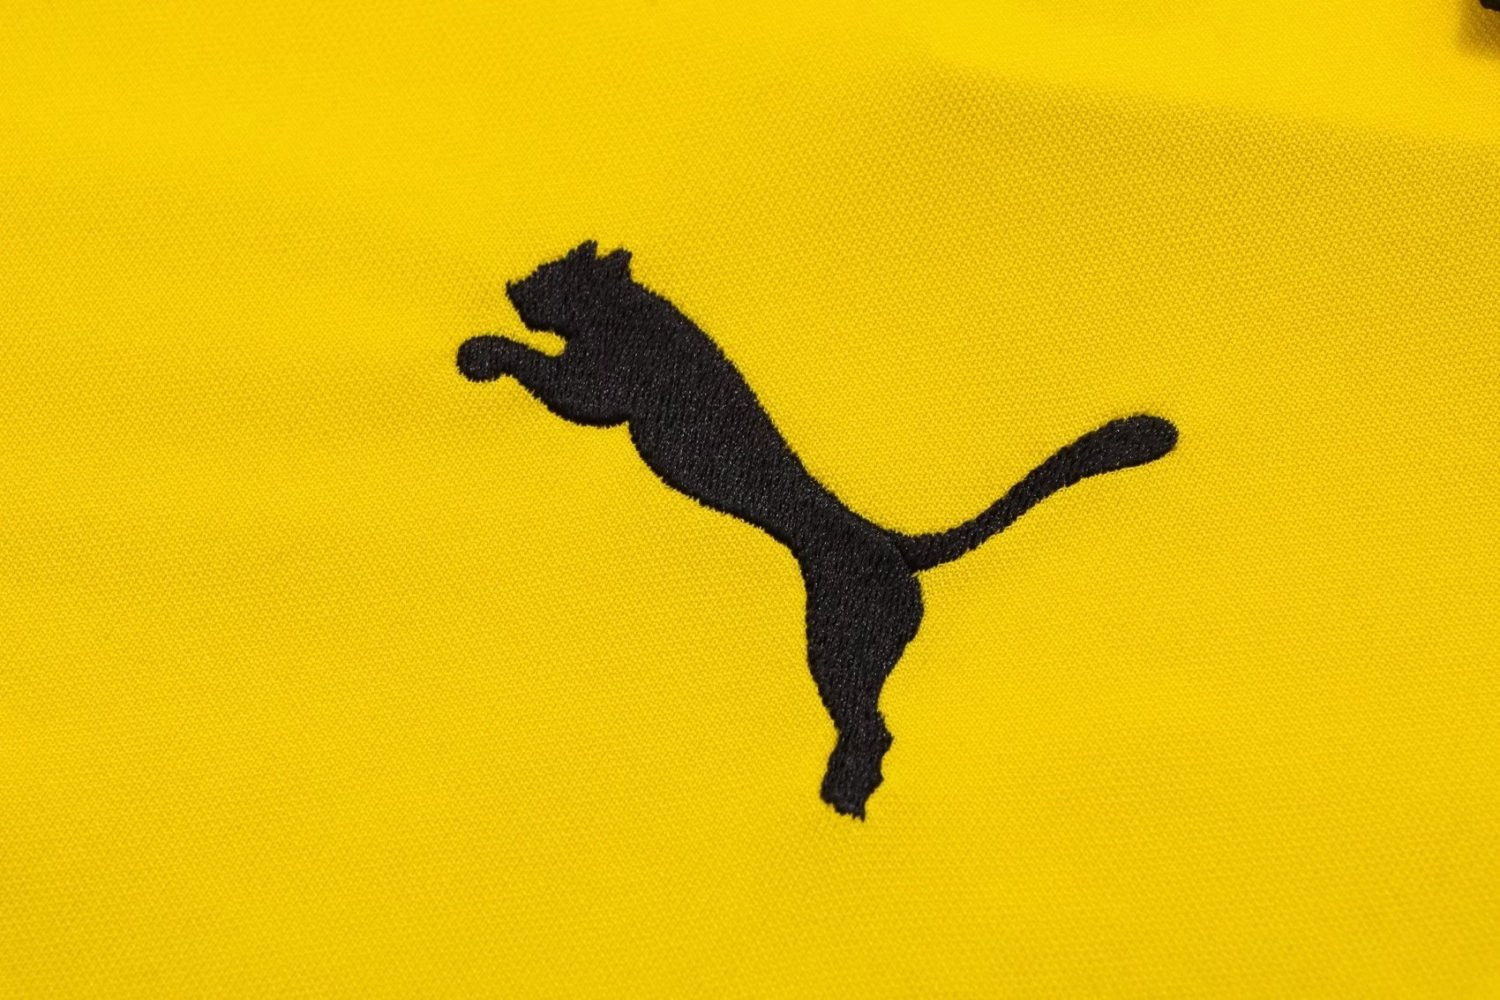 Borussia Dortmund Soccer Polo Jersey Replica Yellow Mens 2022/23